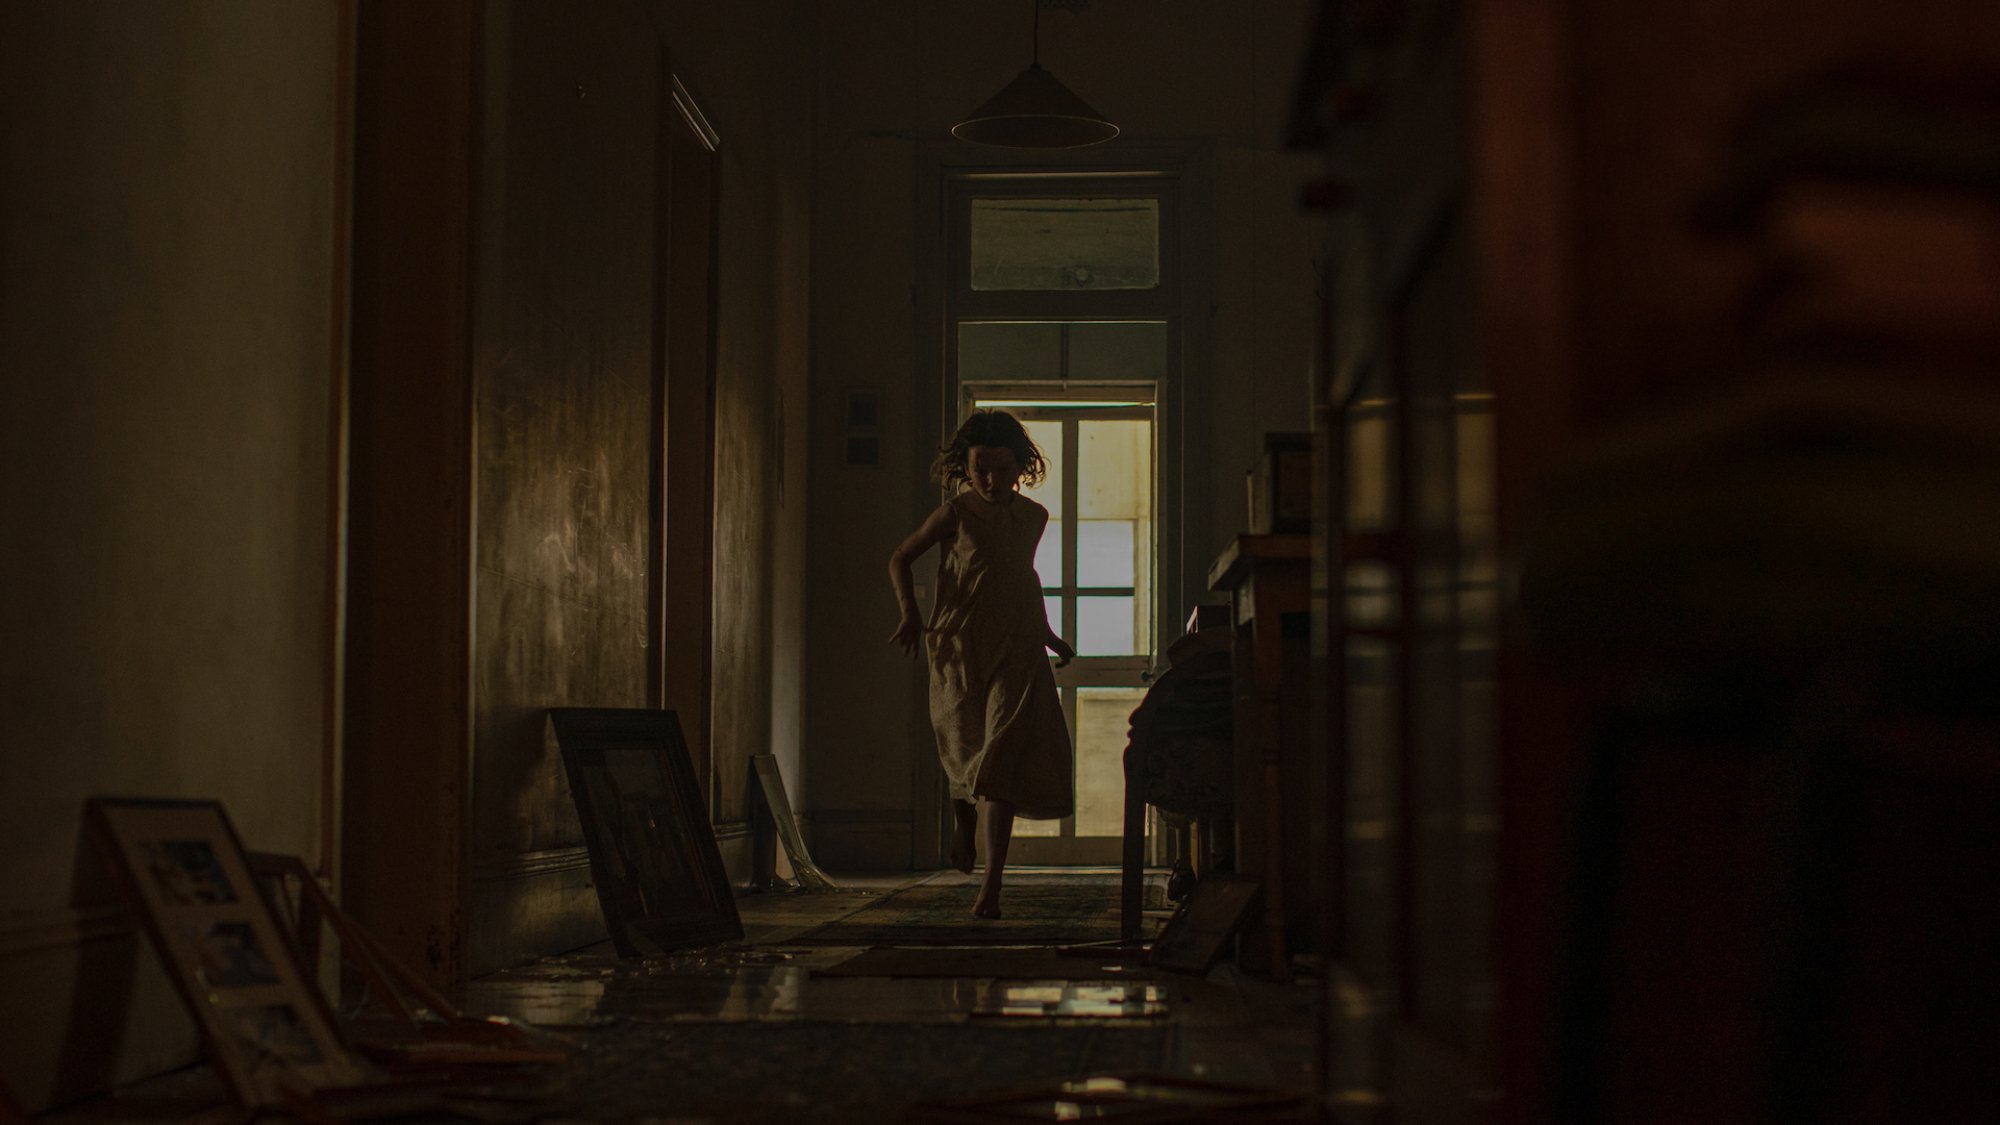 A girl runs through a dark house in the film "Run Rabbit Run"